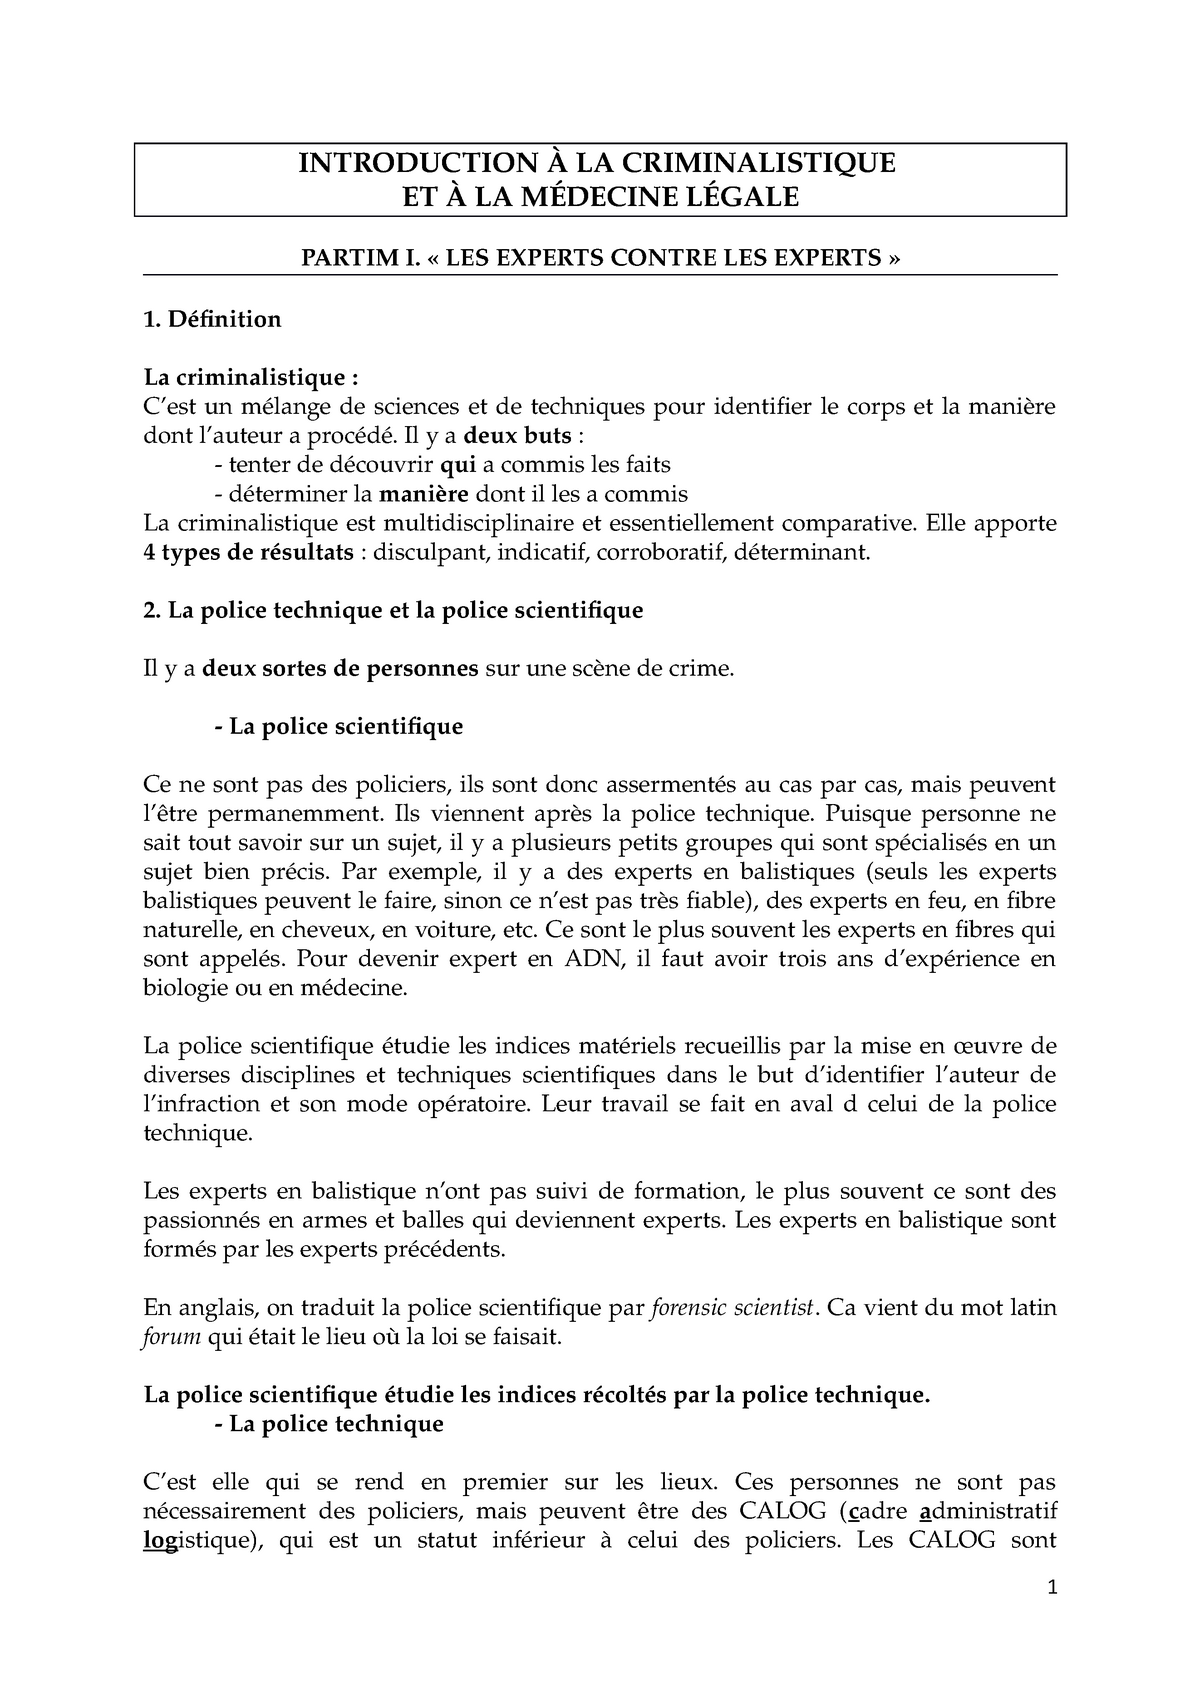 Introduction A La Criminalistique Et A La Medecine Legale Notes De Cours Studocu